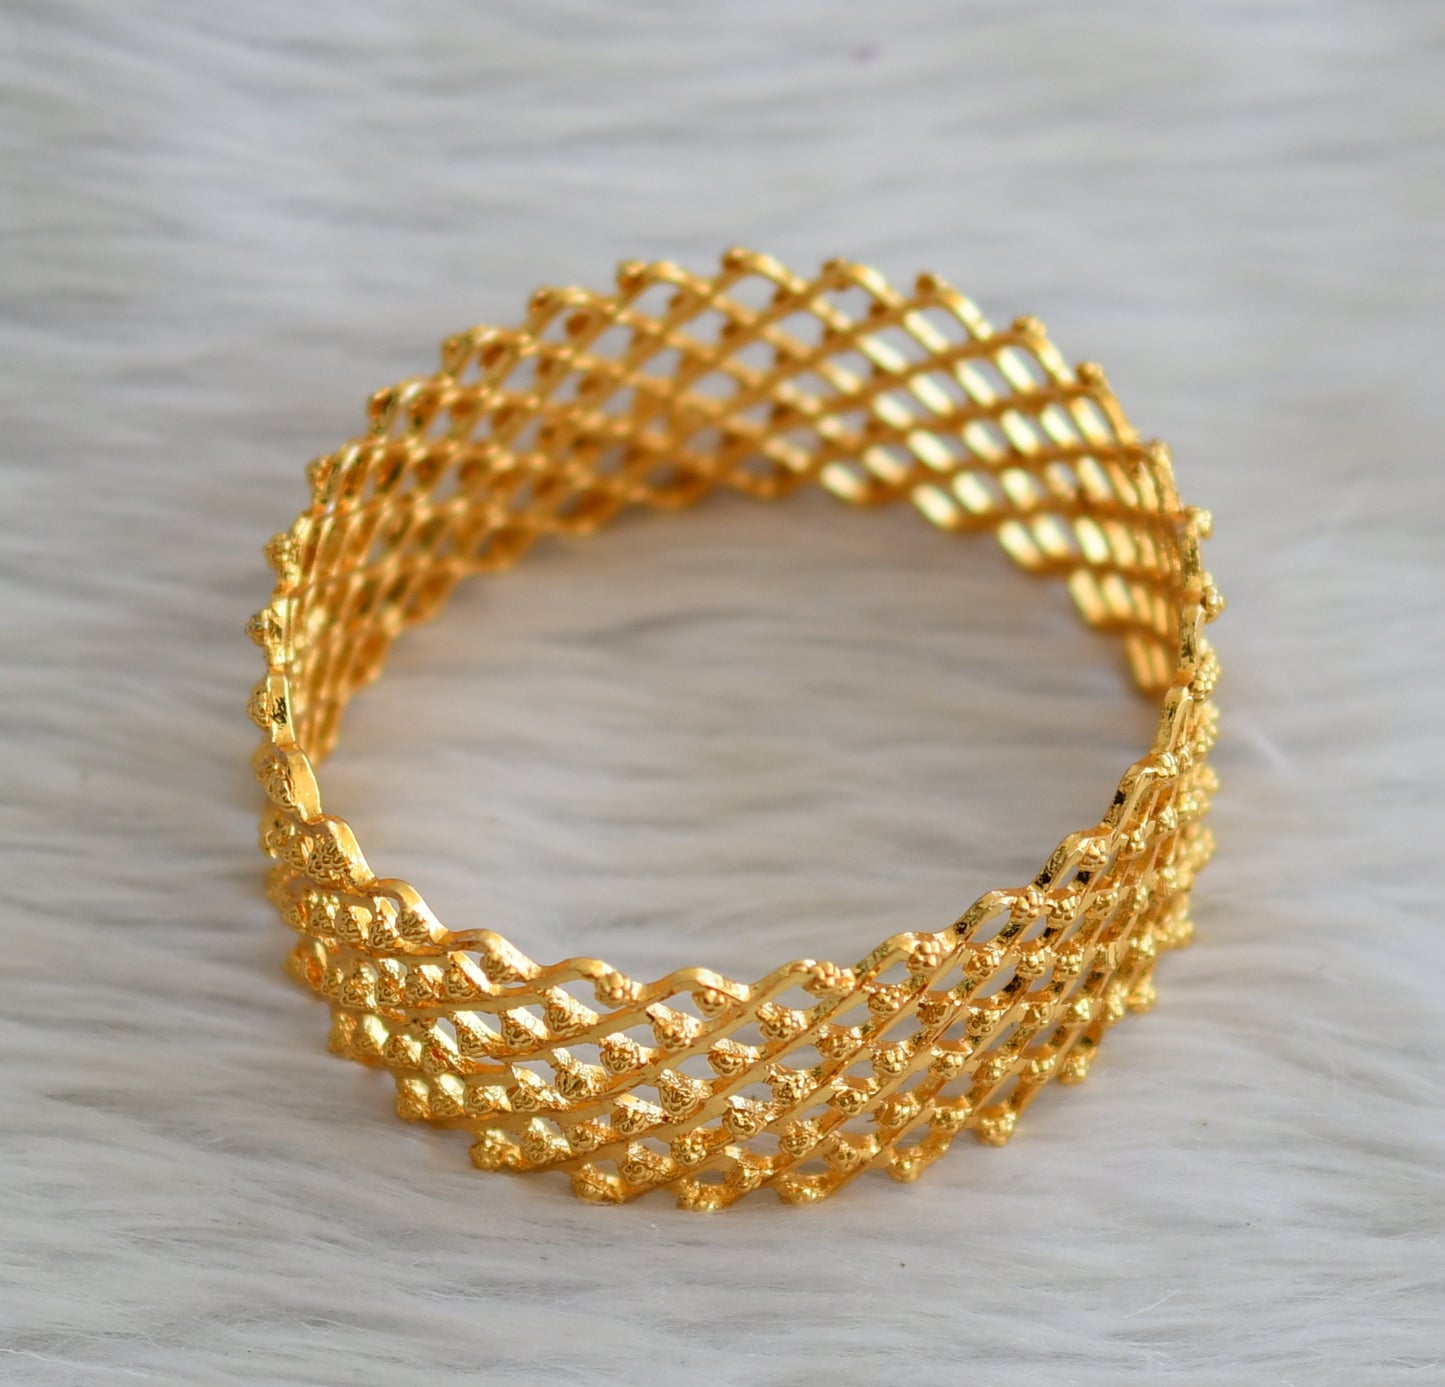 Gold tone kerala style zigzag bangle(2.4) dj-45152